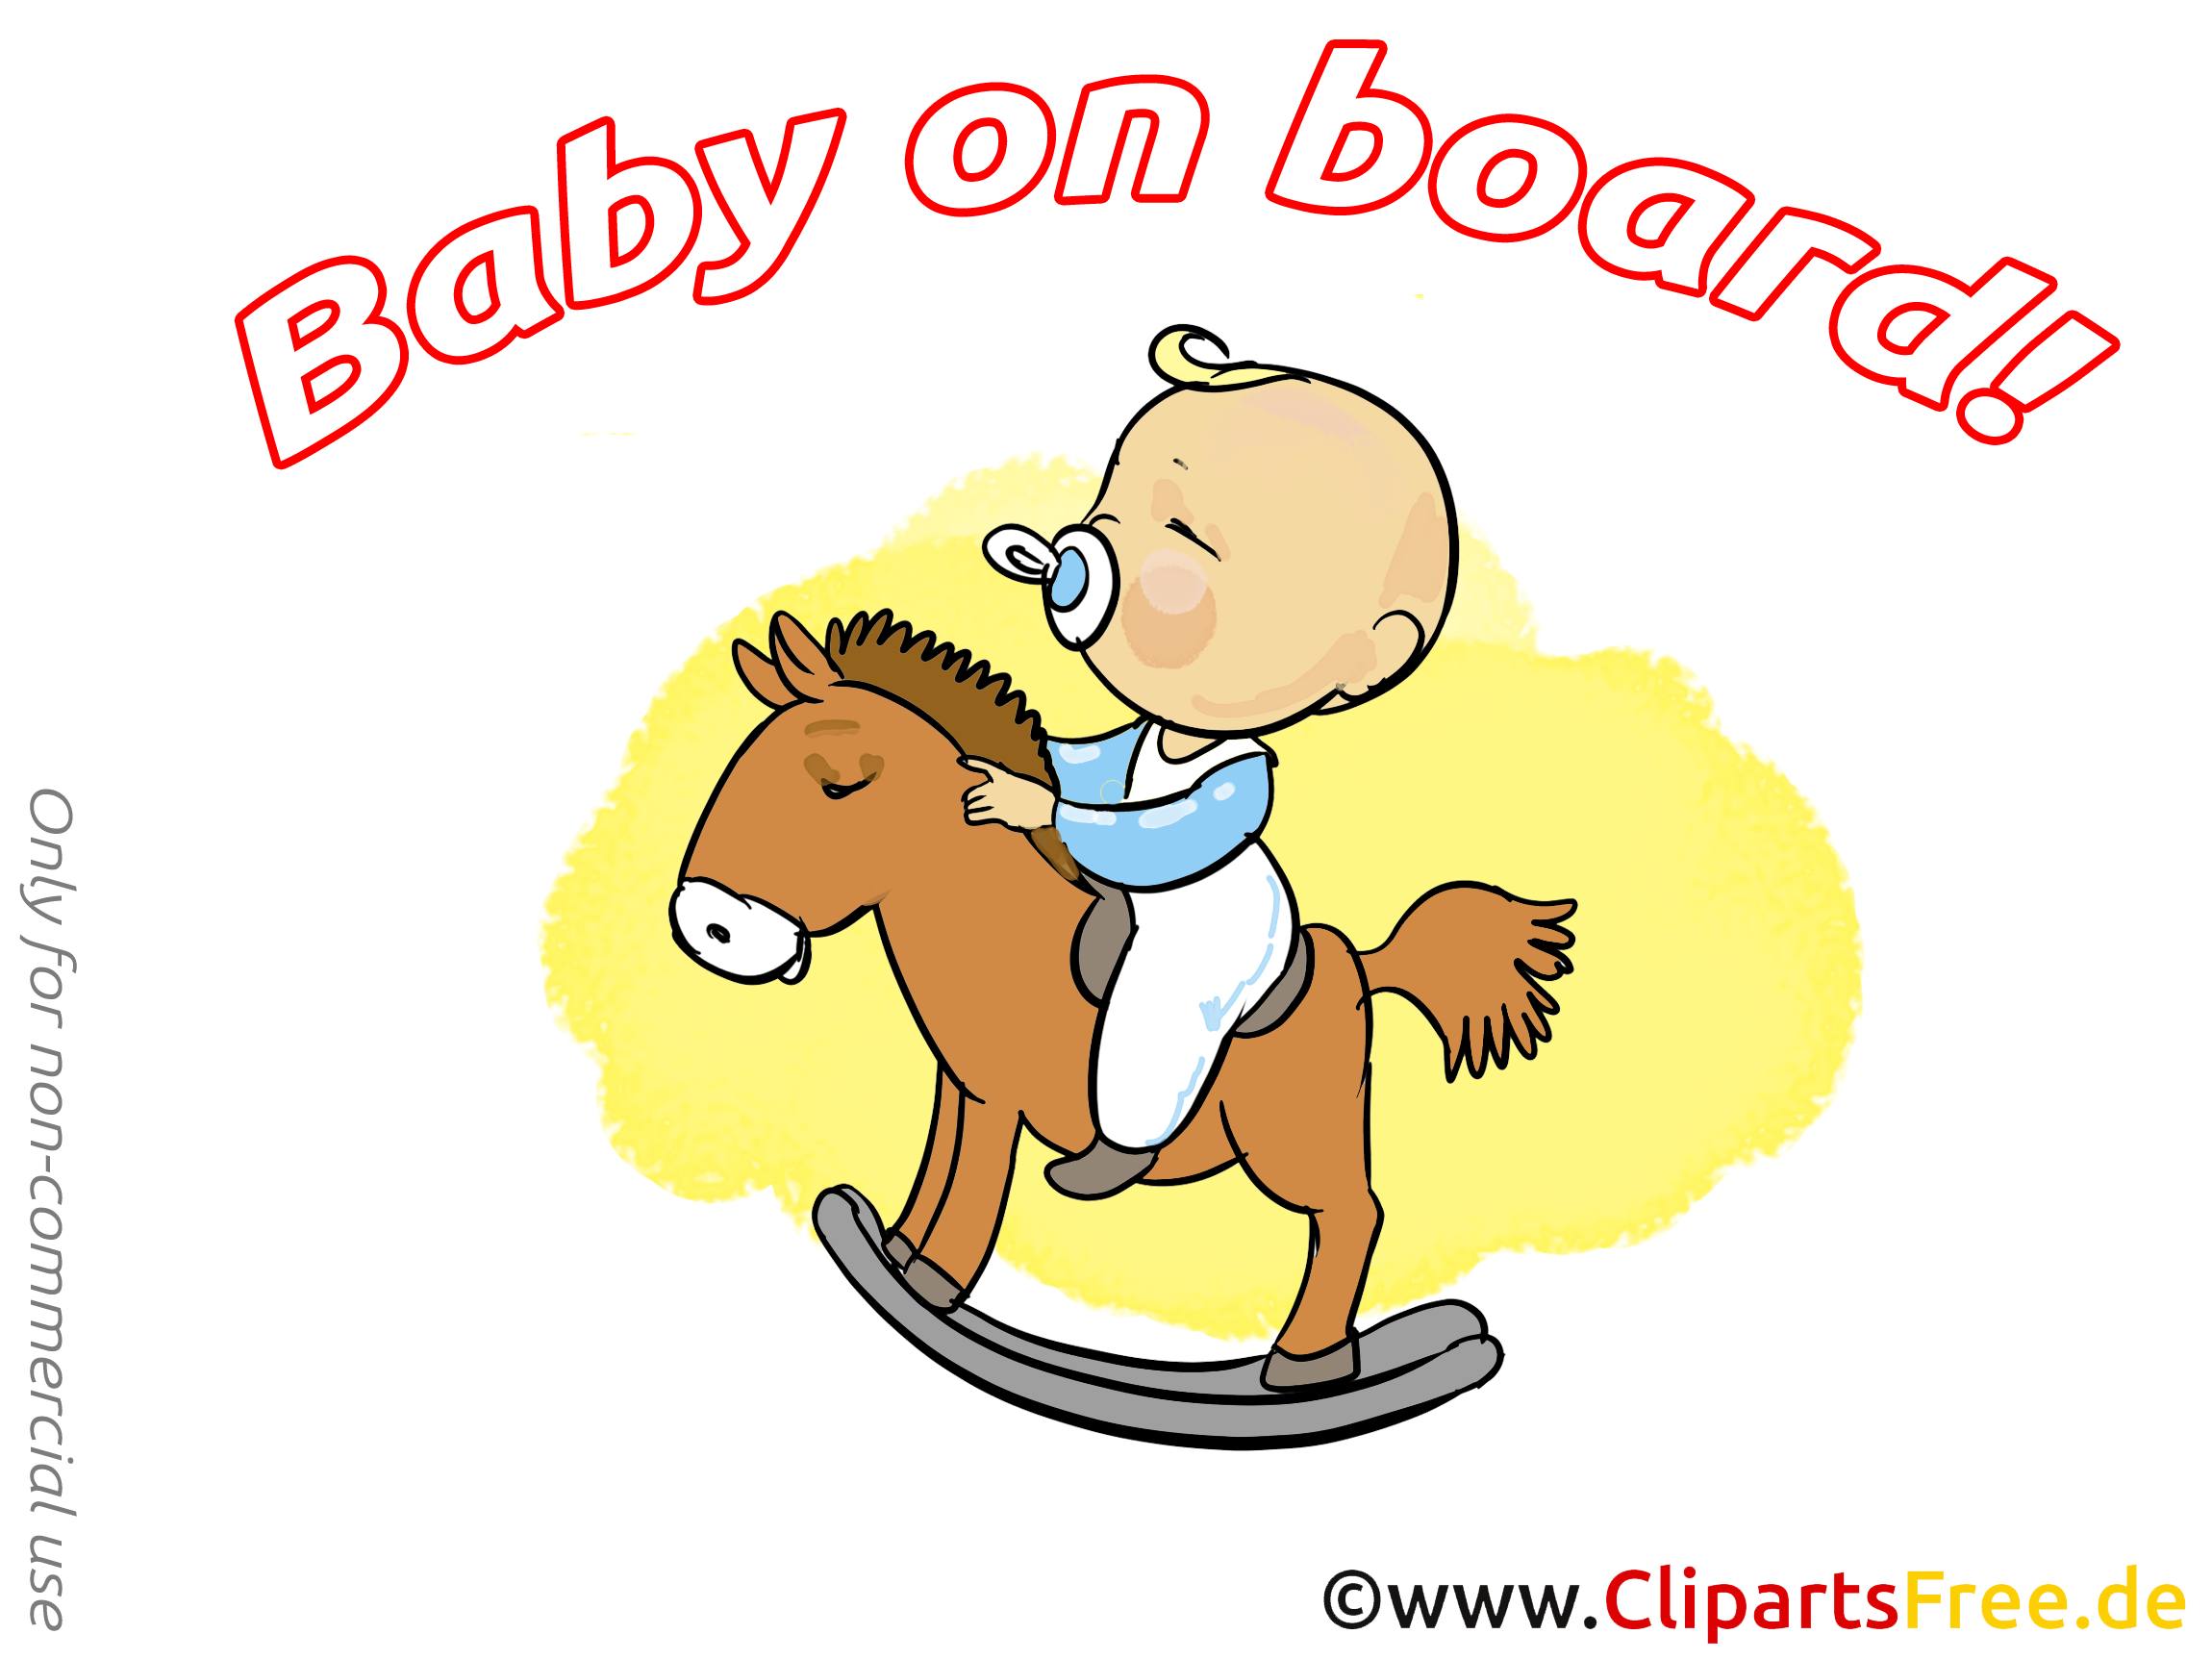 Cheval en bois illustration gratuite – Bébé à bord clipart